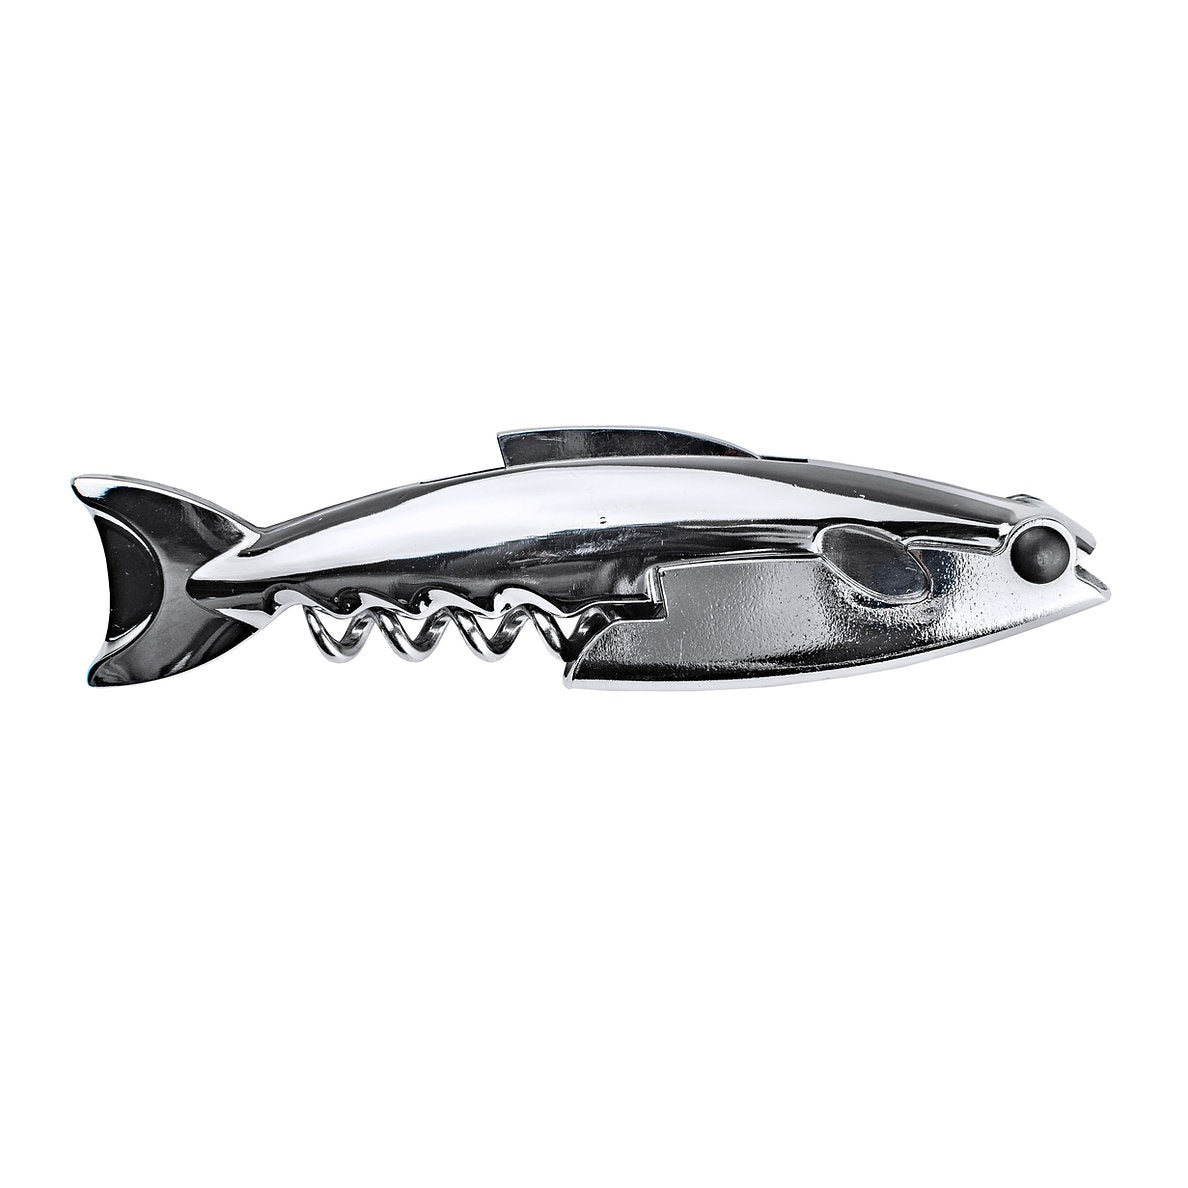 BarY3 BAR-0752 Shark Waiter's Corkscrew, Silver, Stainless Steel